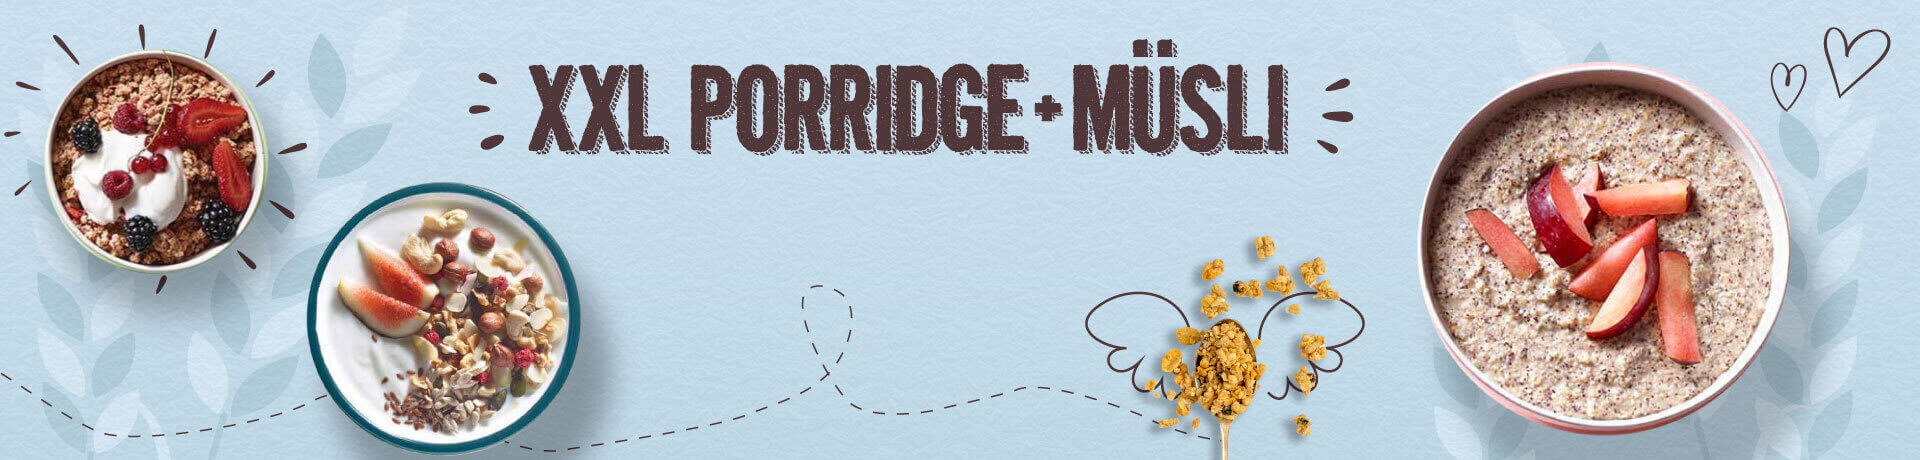 Acheter un grand paquet de Porridge & Muesli en ligne Verival